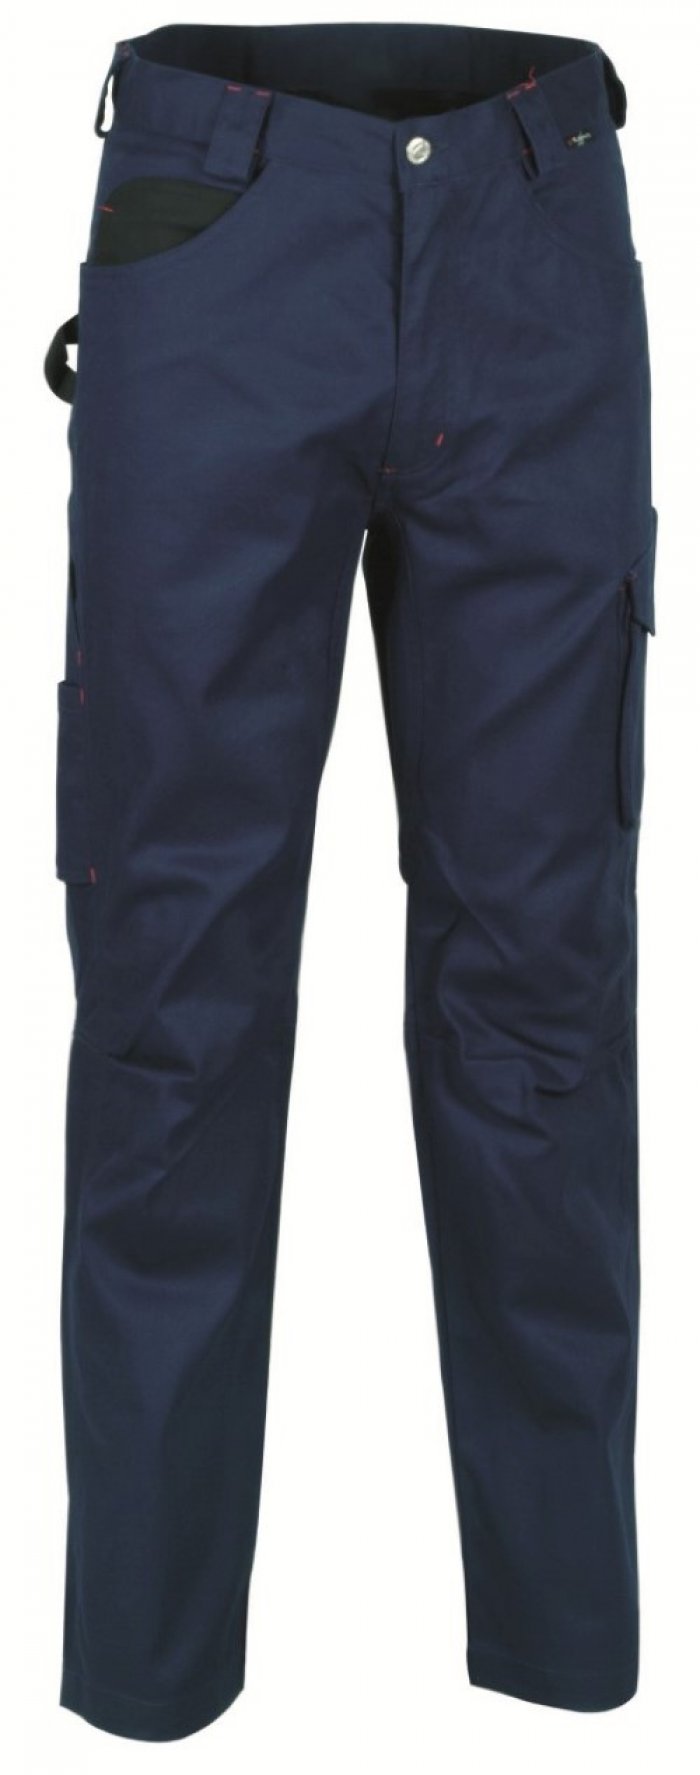 Pantalone drill colore navy tg.52